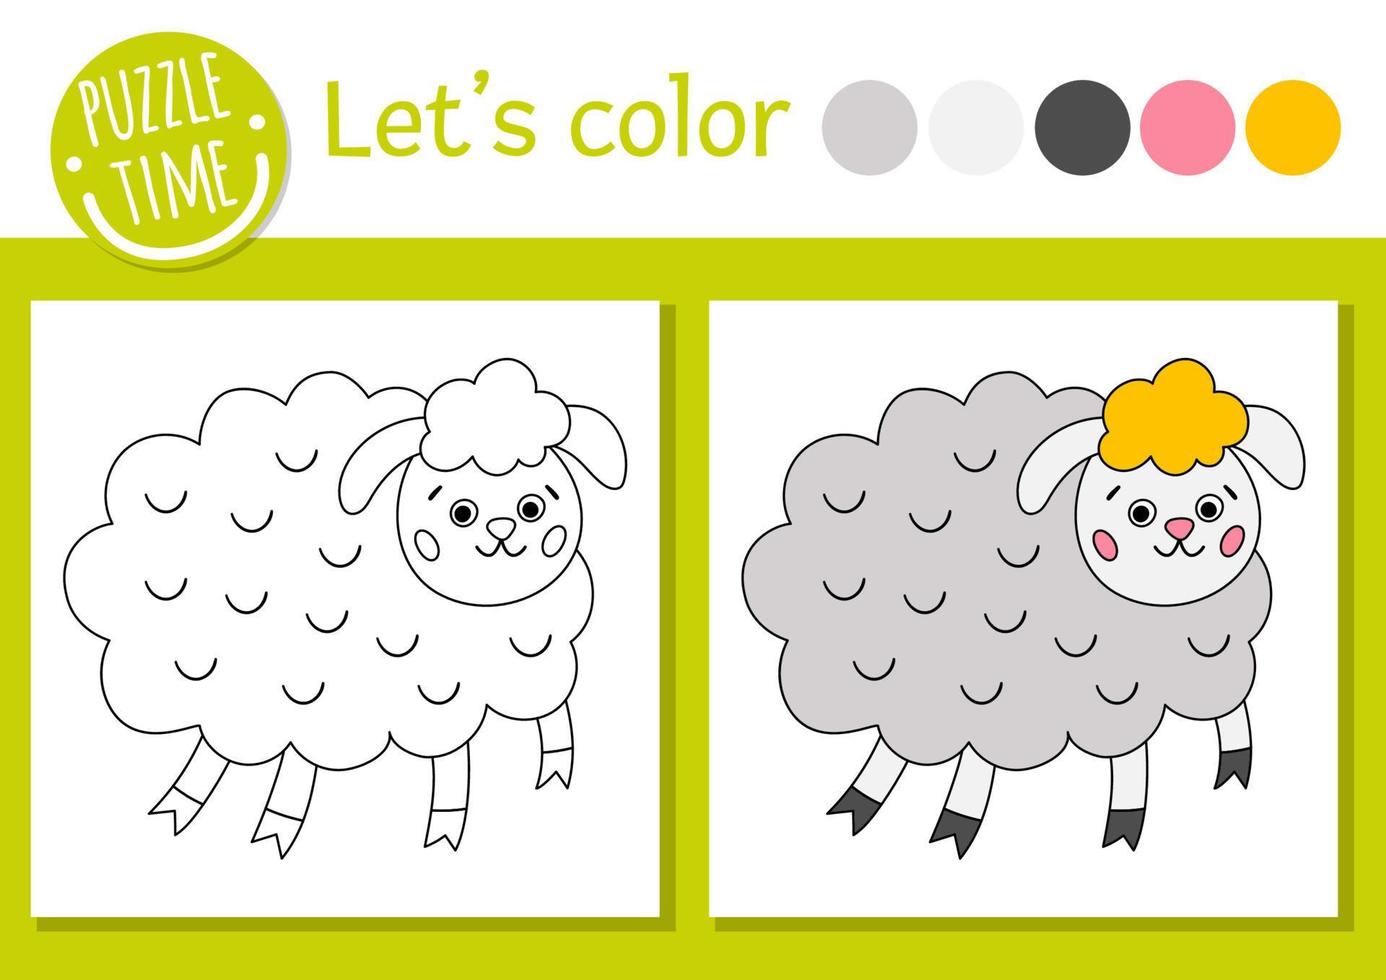 Pasen kleurplaat voor kinderen. grappige schapen foto. vector vakantie overzicht illustratie met schattige landbouwhuisdieren. schattig lente kleurboek voor kinderen met gekleurd voorbeeld